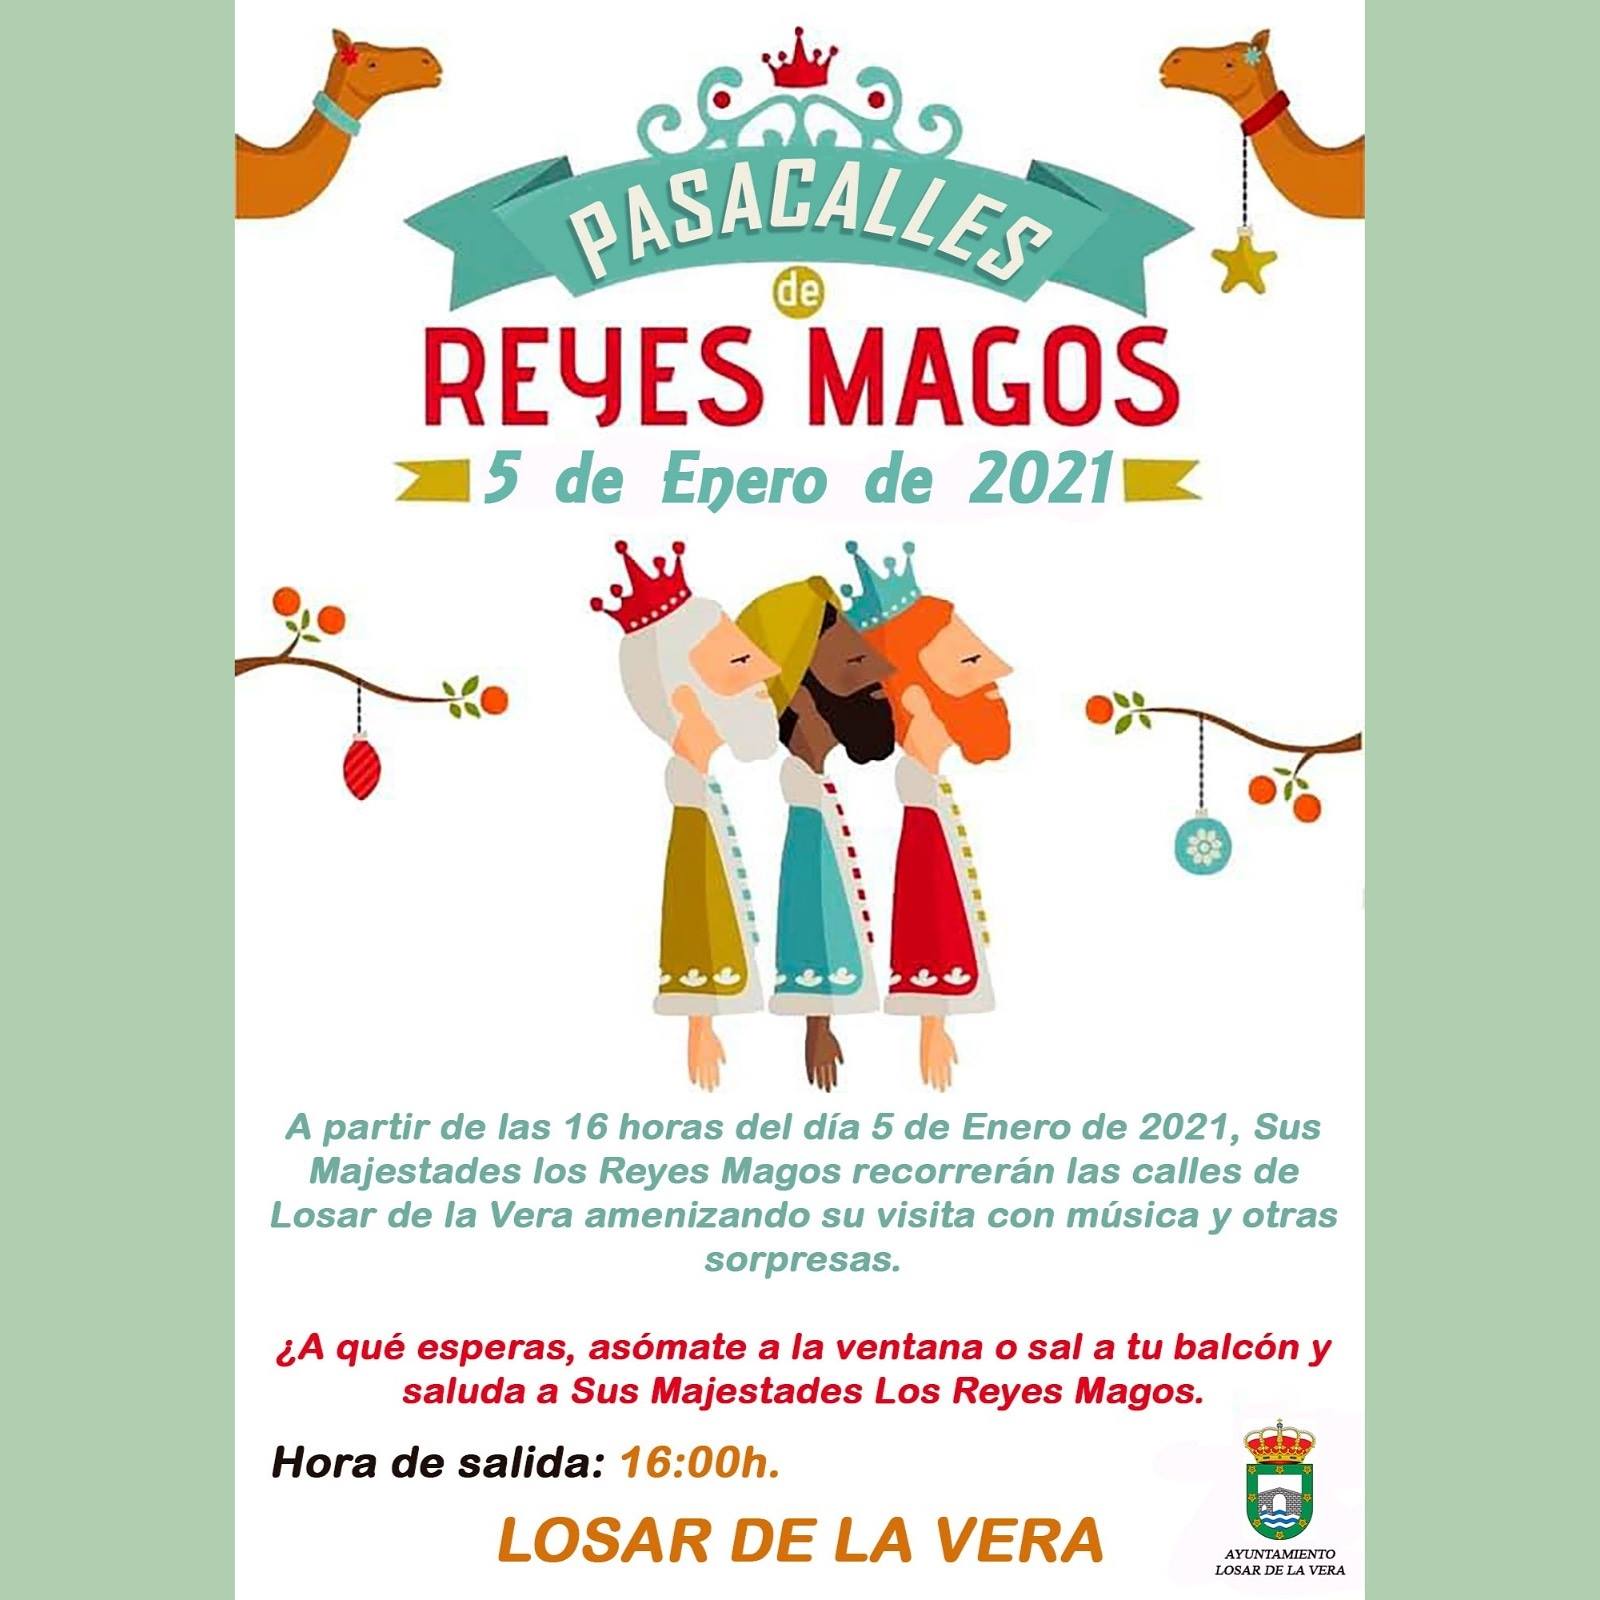 Pasacalles de Reyes Magos (2021) - Losar de la Vera (Cáceres)